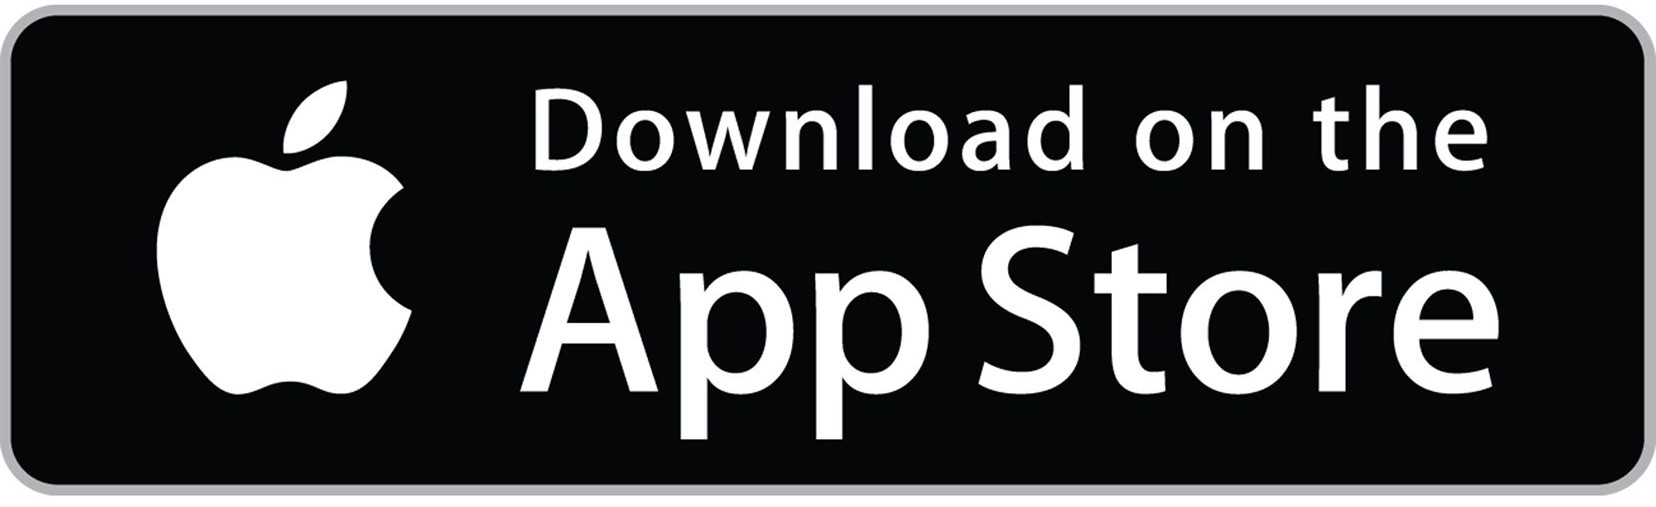 Download de Rollenapp in de App Store